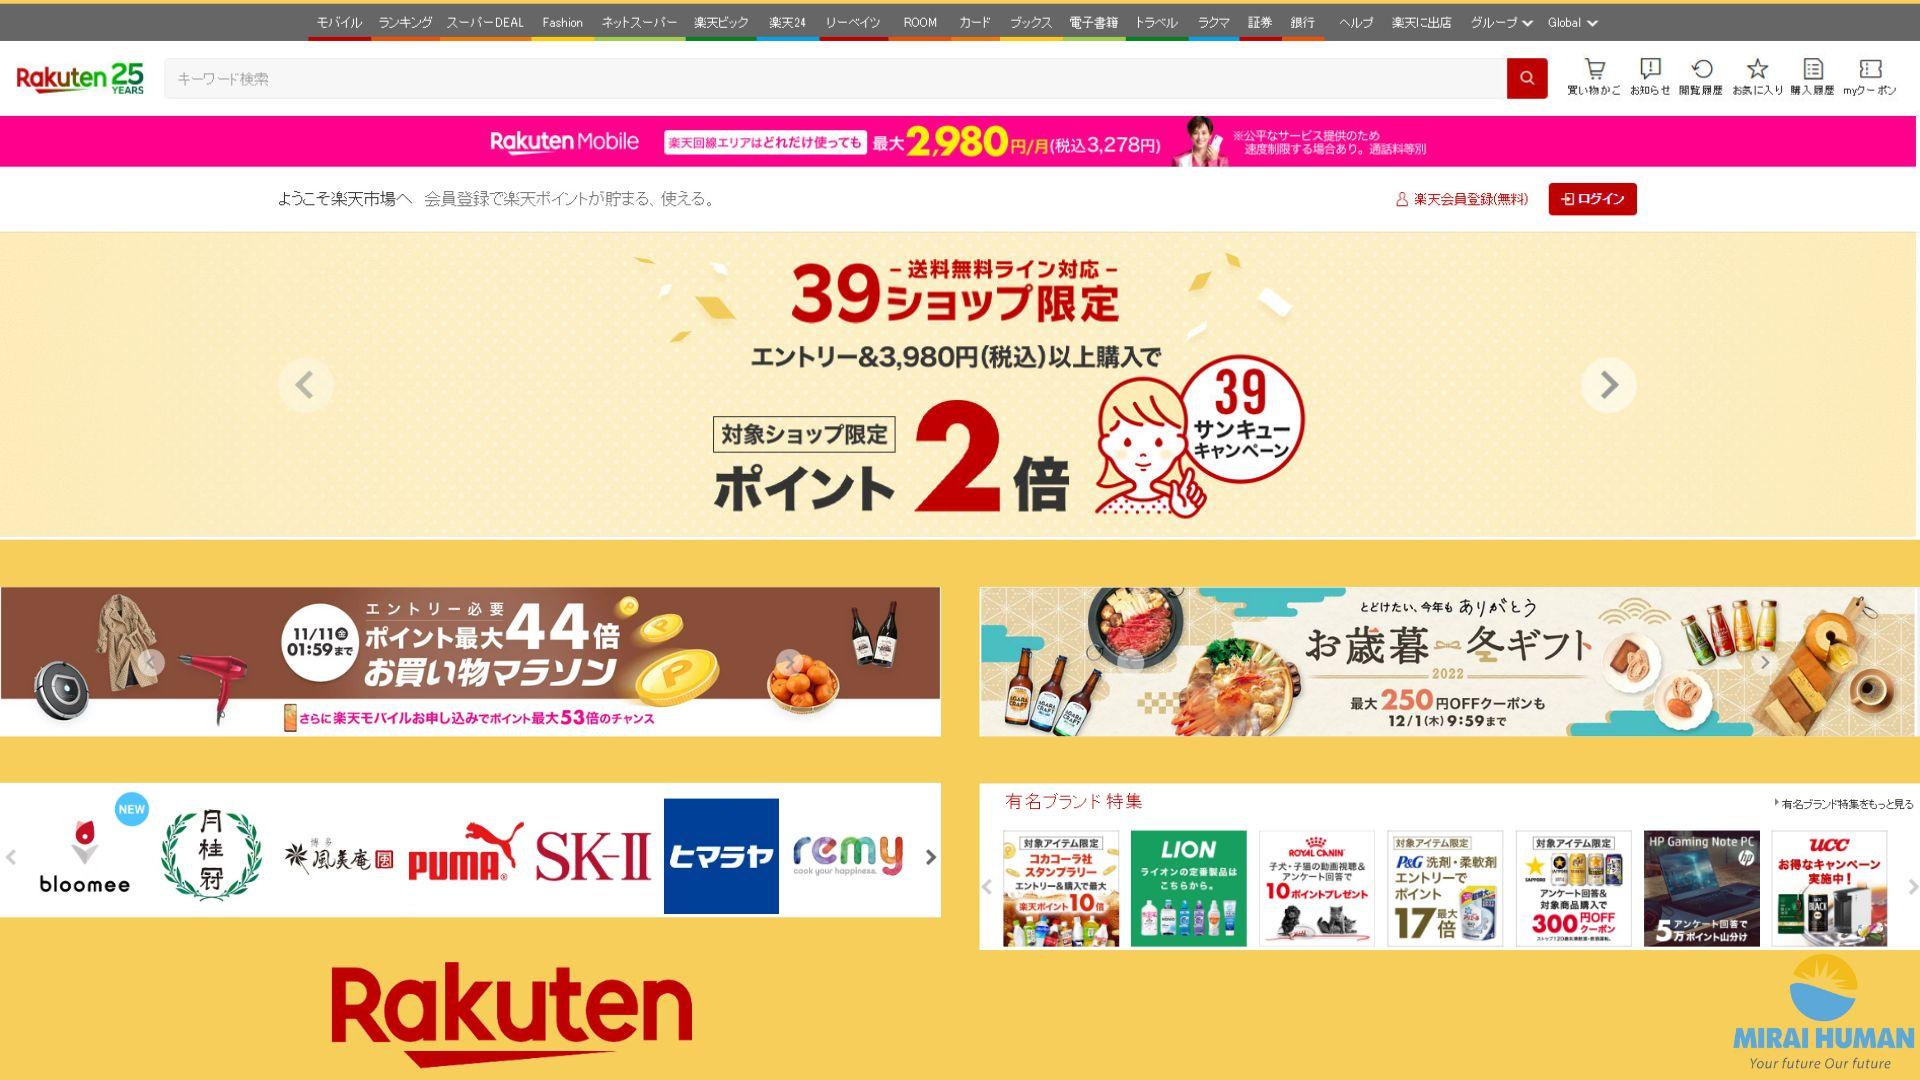 Rakuten - Trang web bán hàng nổi tiếng Nhật Bản